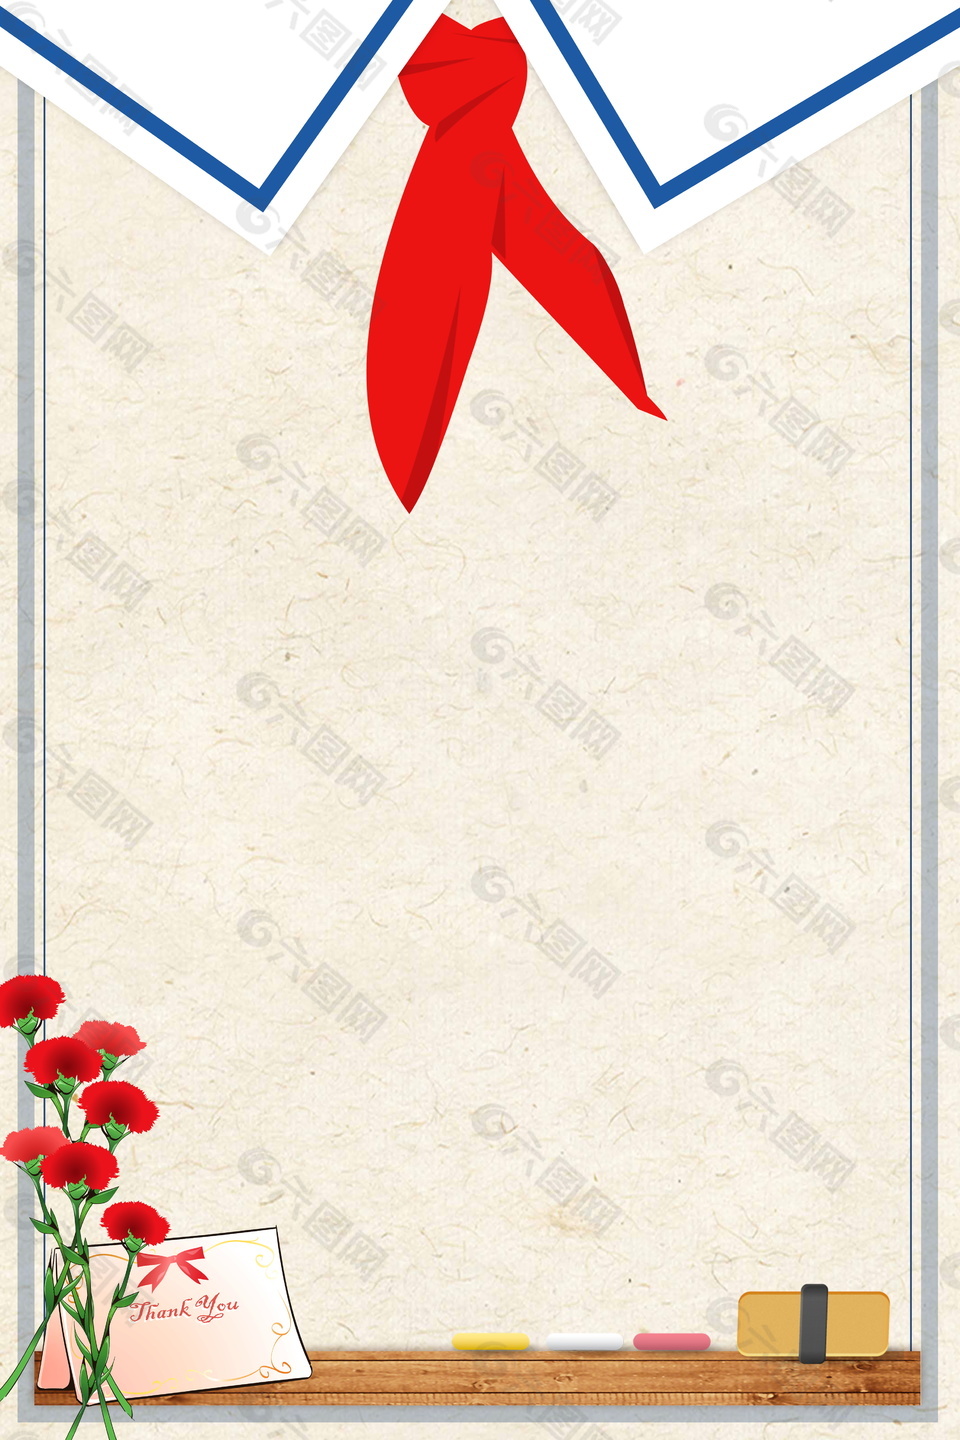 大红色康乃馨与红领巾设计教师节背景素材